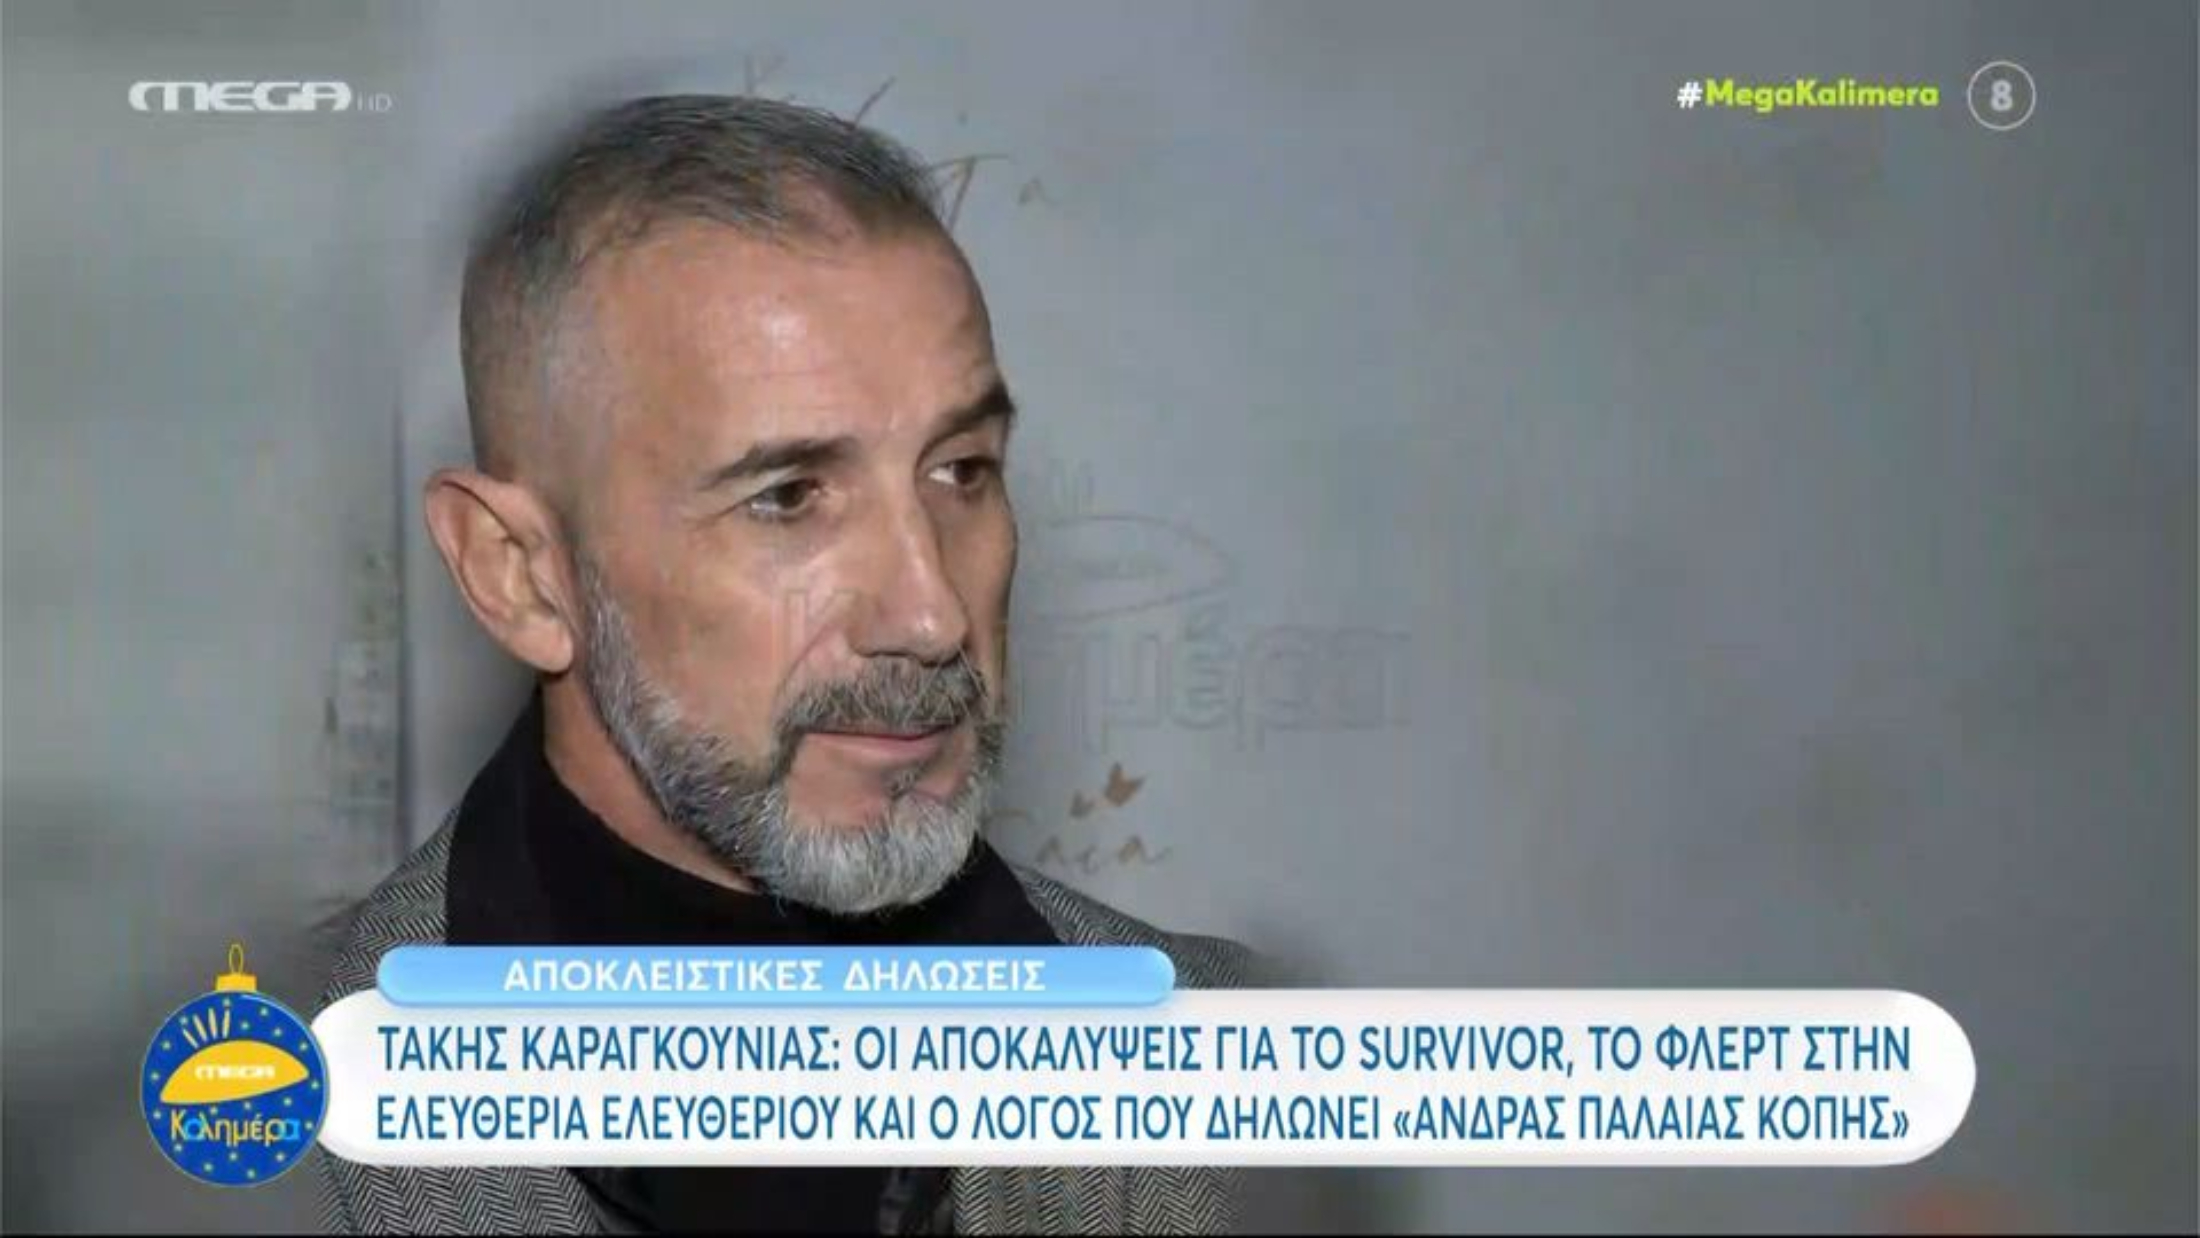 Τάκης Καραγκούνιας: «Θα ήθελα να μπει στο Survivor η Ελευθερία Ελευθερίου, πώς θα γνωριστούμε καλυτέρα;» (VIDEO)